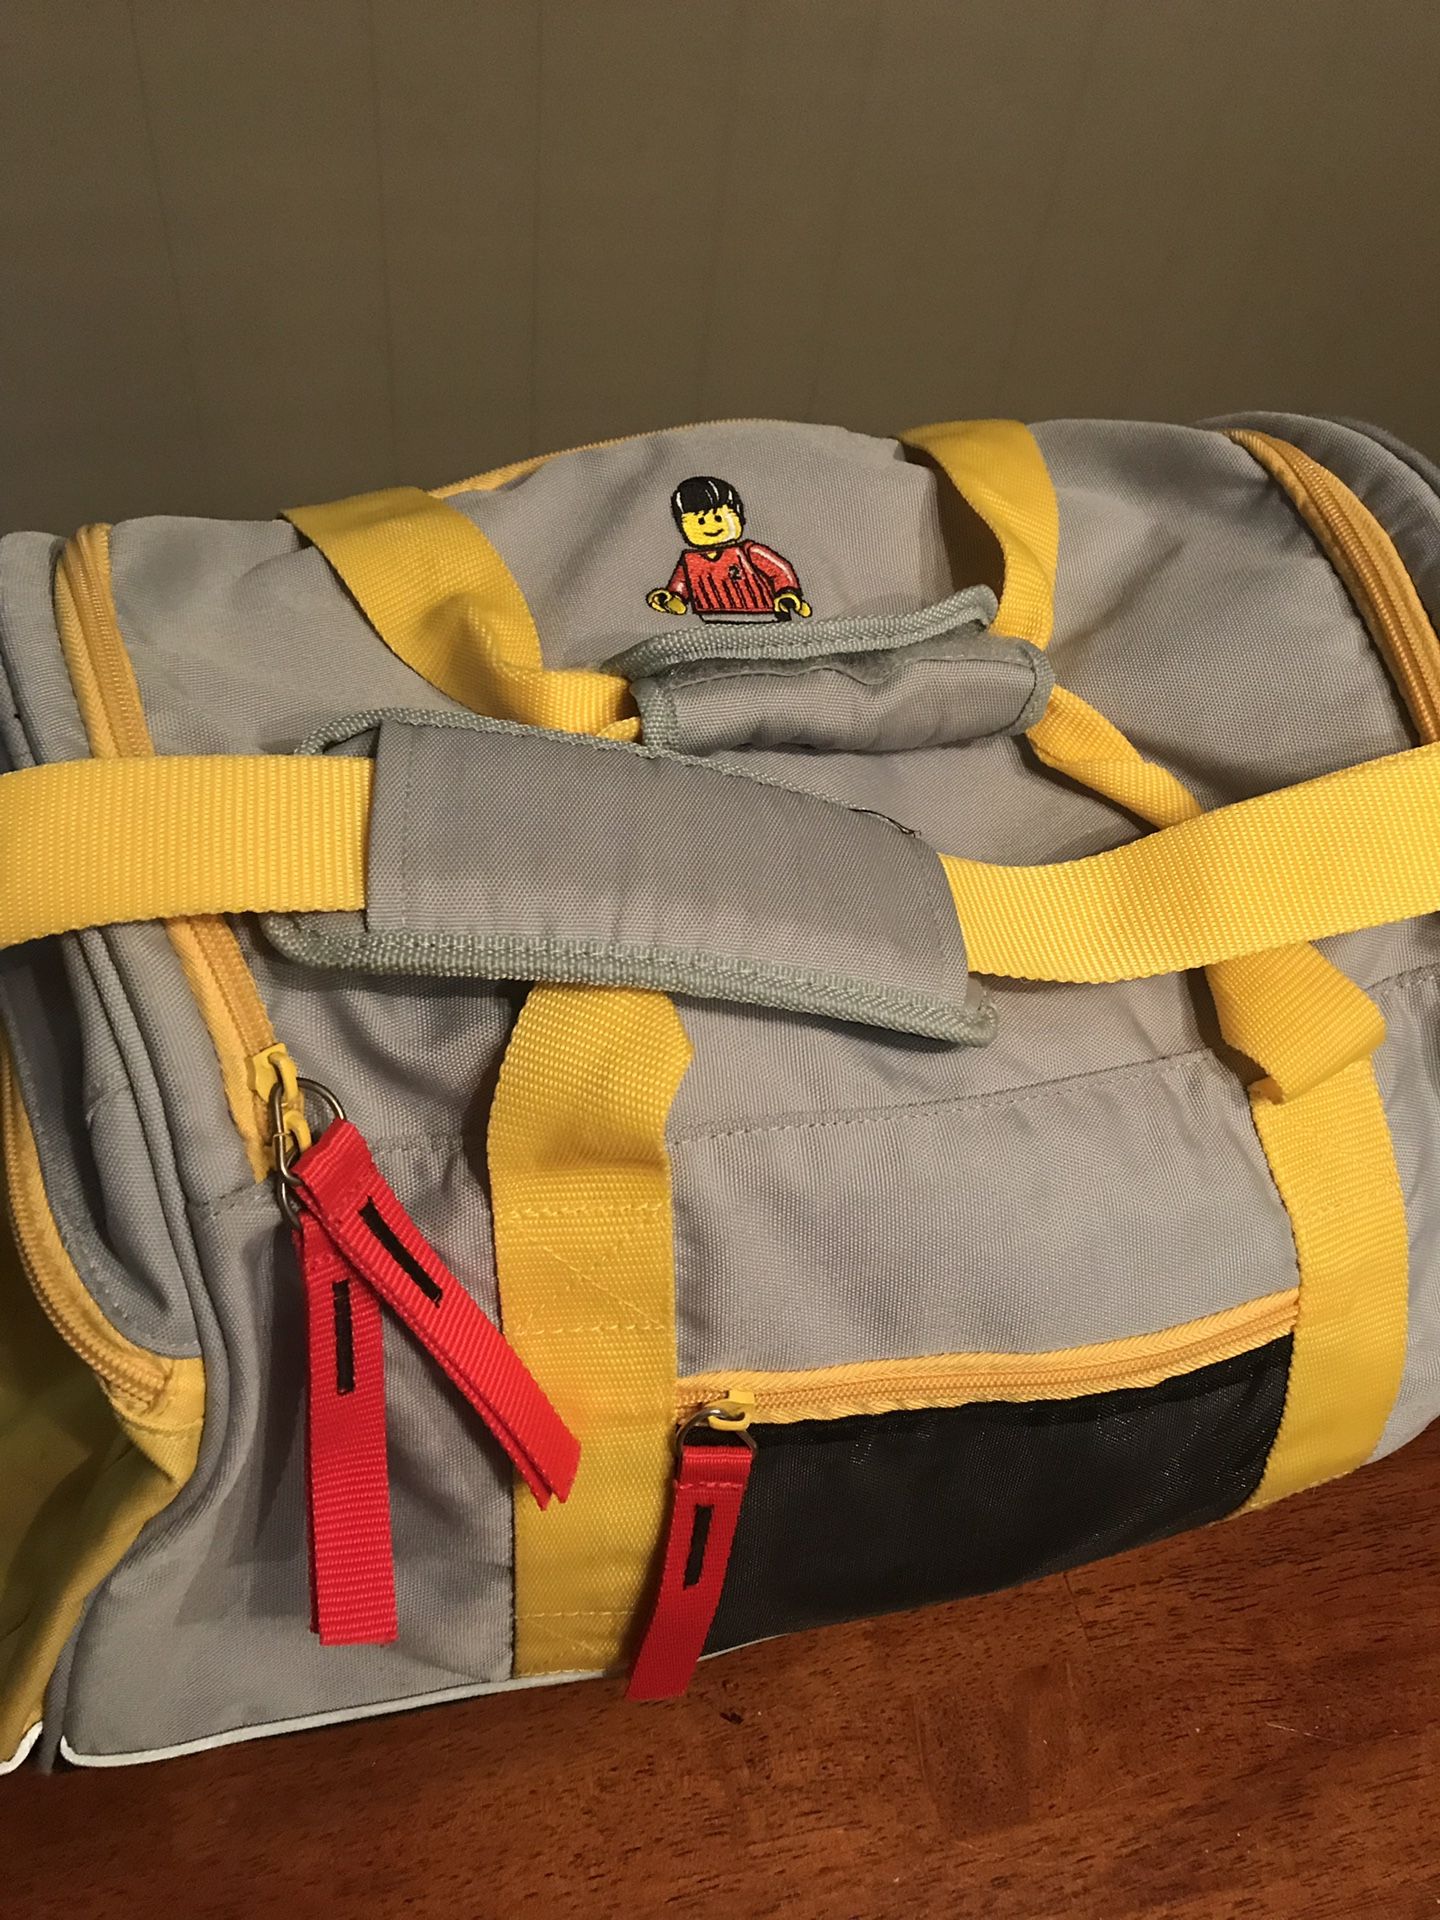 Vintage Lego Soccer Duffle Bag